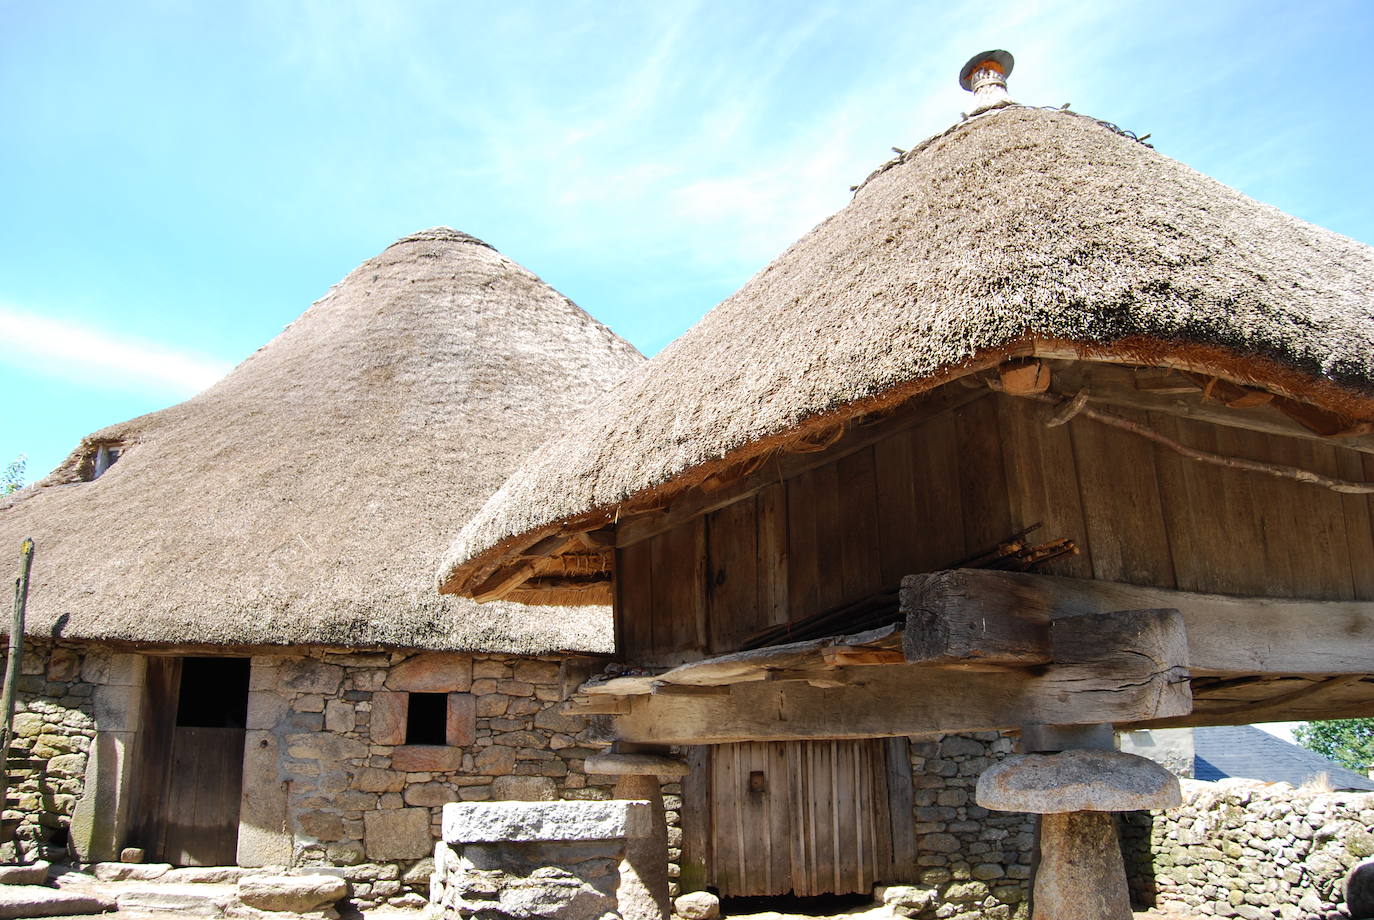 En las pallozas vivían los habitantes de Piornedo hasta 1970. Son estructuras circulares de piedra, con un techo en forma de cono hecho de paja de centeno, que fueron declaradas Bien de Interés Cultural. 